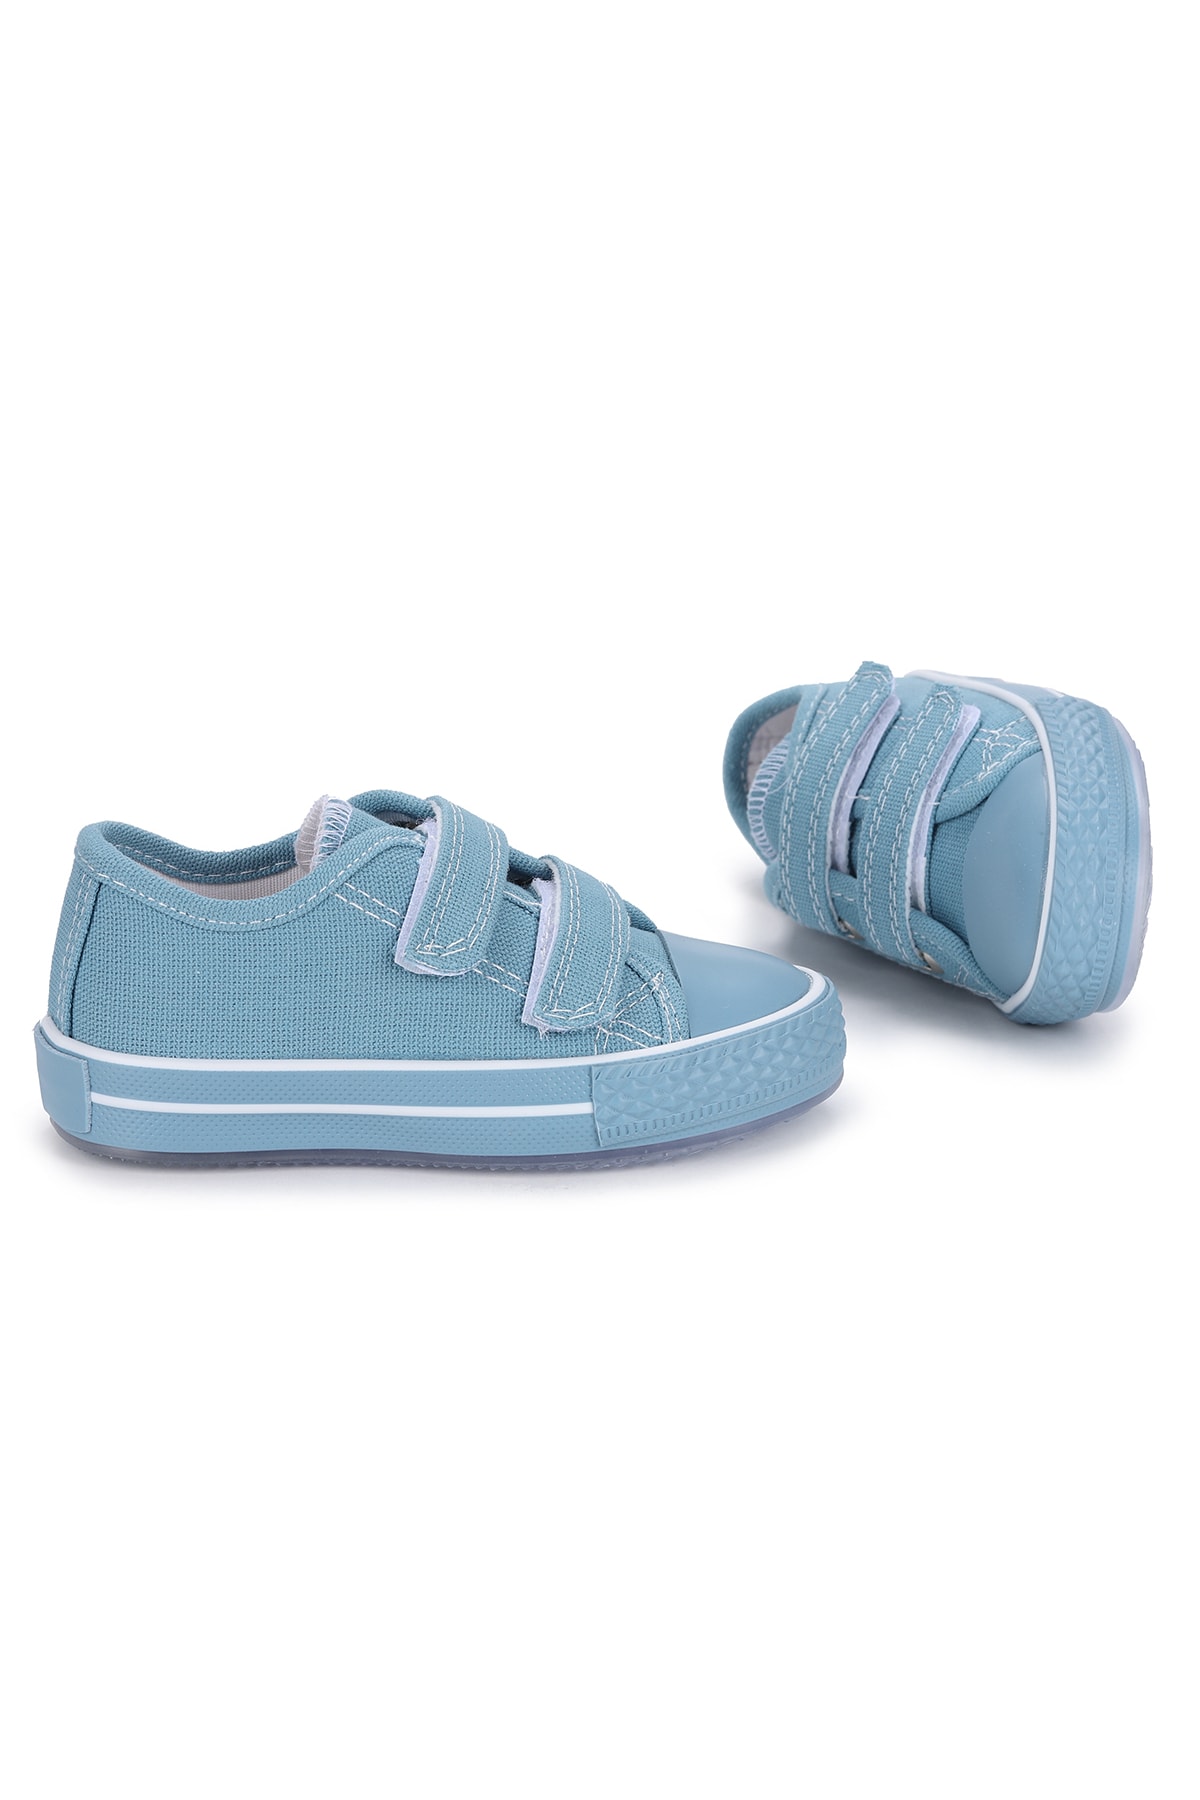 Almues Mavi - Kids Alf 133 Renkli Sargı Işıklı Kız/erkek Çocuk Keten Spor Ayakkabı